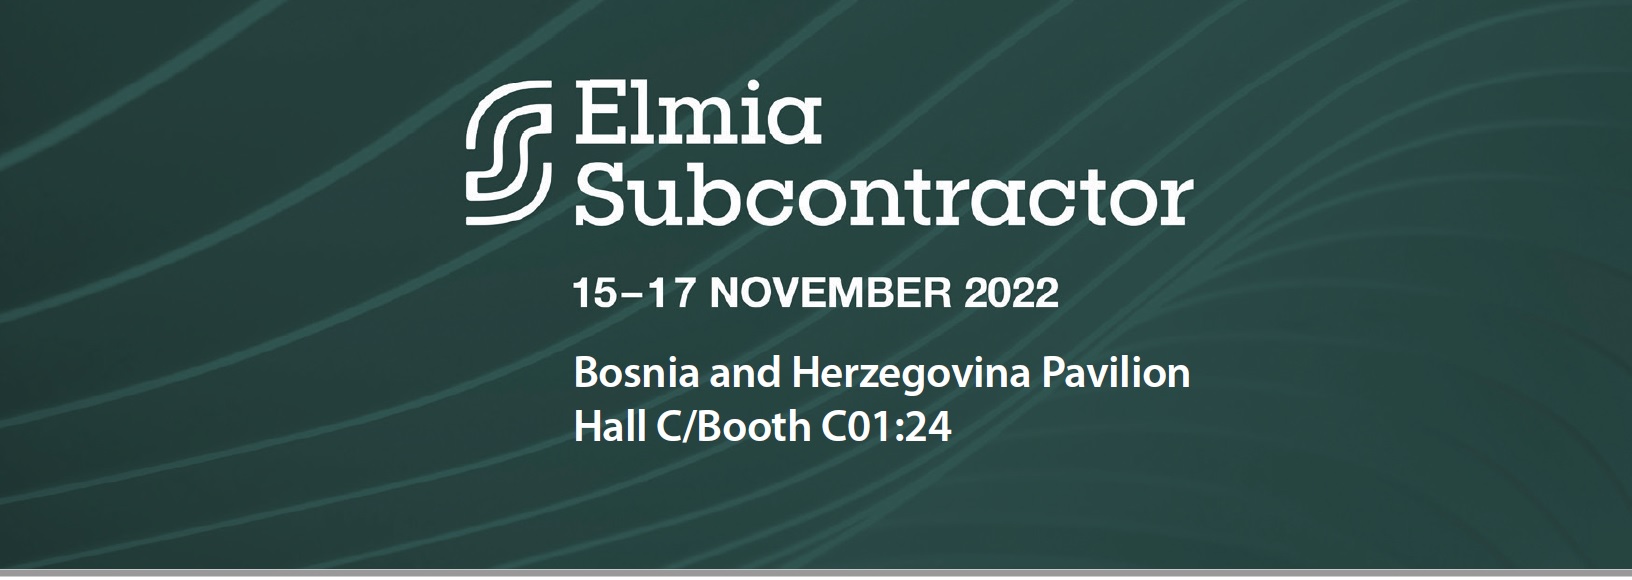 Metalska industrija Bosne i Hercegovine na Međunarodnom sajmu ELMIA Subcontractor, 15-17.11.2022. Jonkoping, Švedska